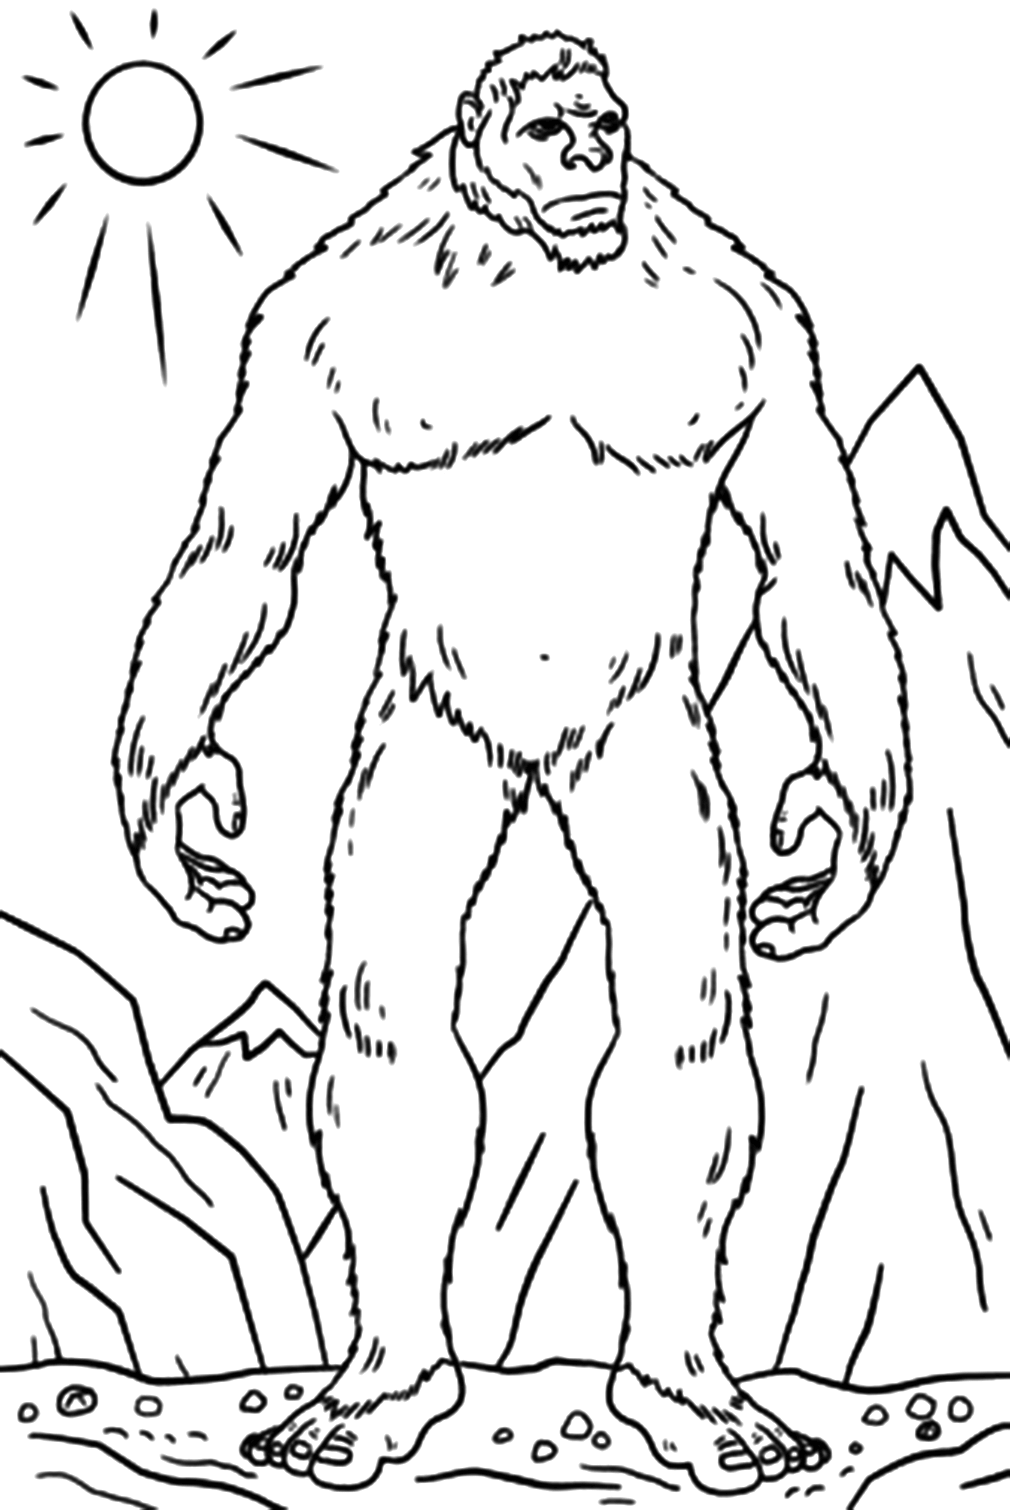 Bigfoot-Bild zum Ausmalen von Bigfoot